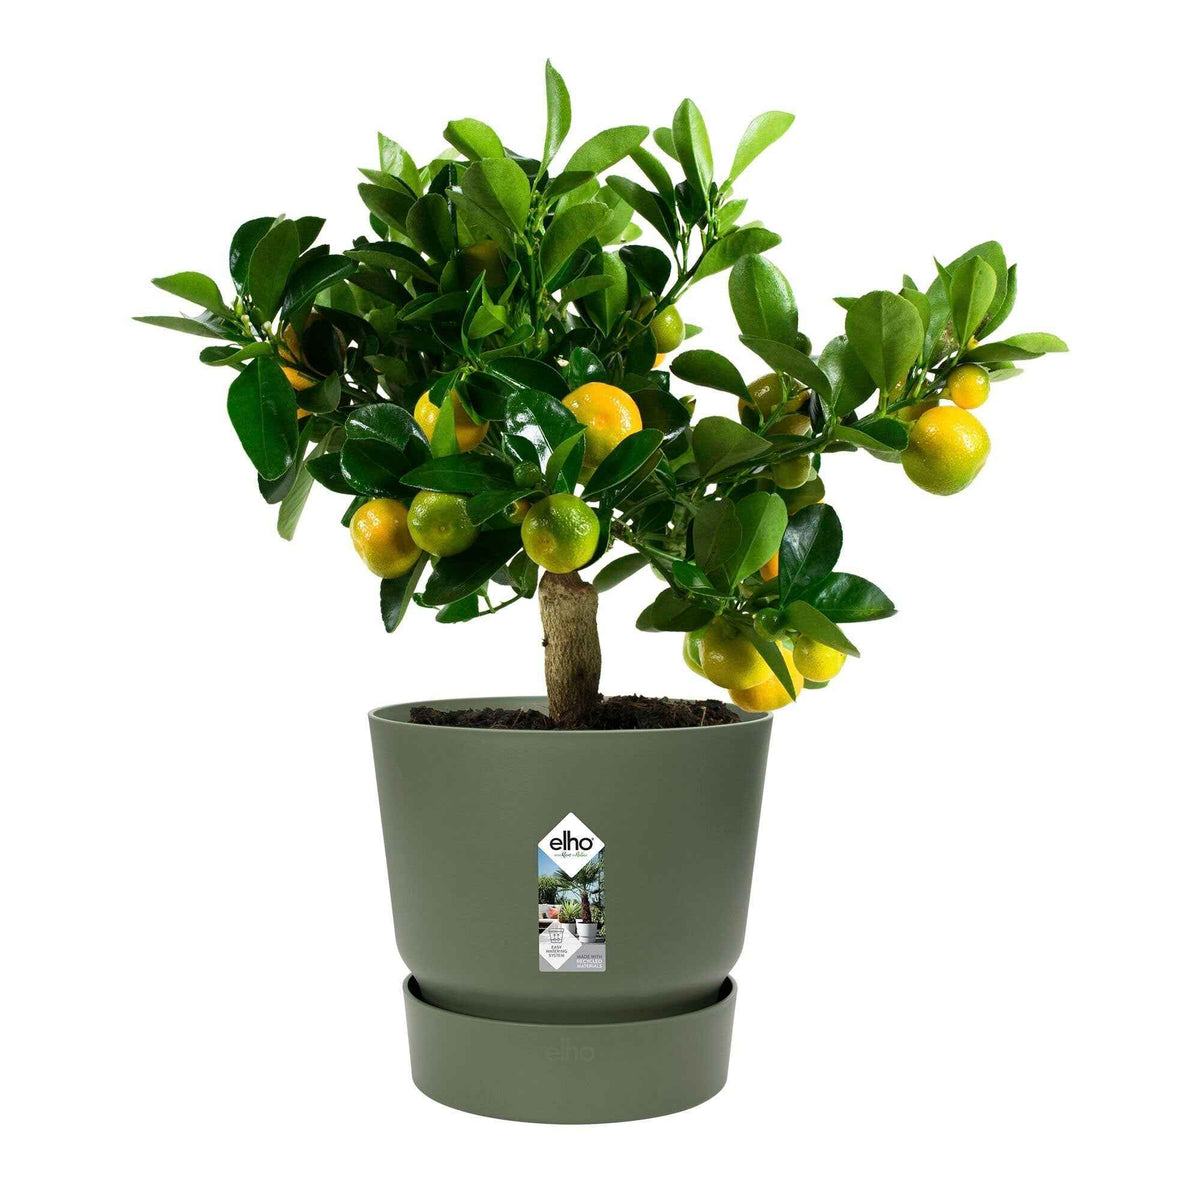 Pot de fleurs Greenville Leaf green ELHO - Pots et contenants pour cultiver vos plantes